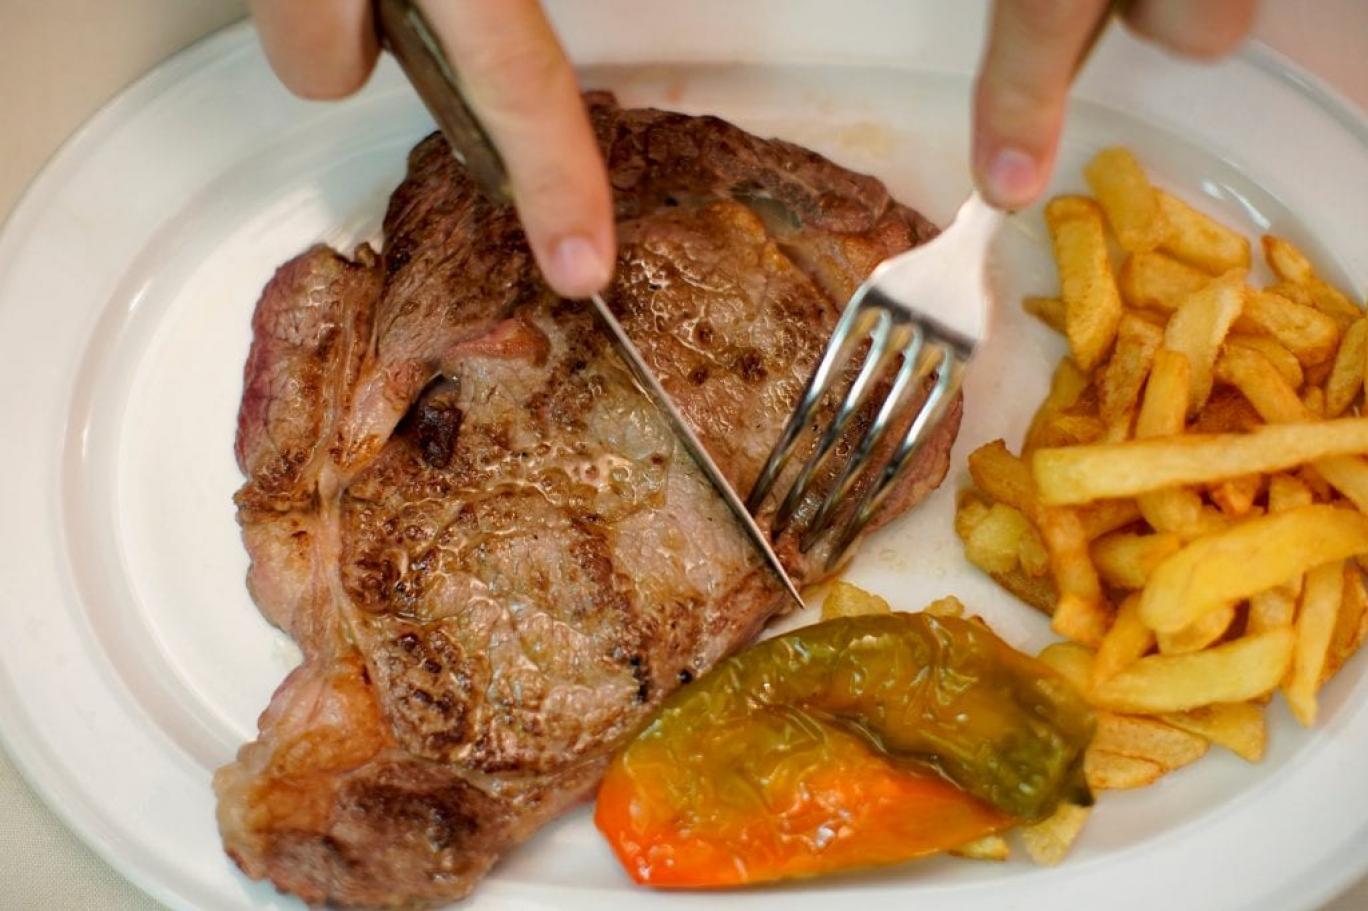 Haftada 3 kez kırmızı et yemek erken ölüm riskini yüzde 10 artırıyor |  Independent Türkçe